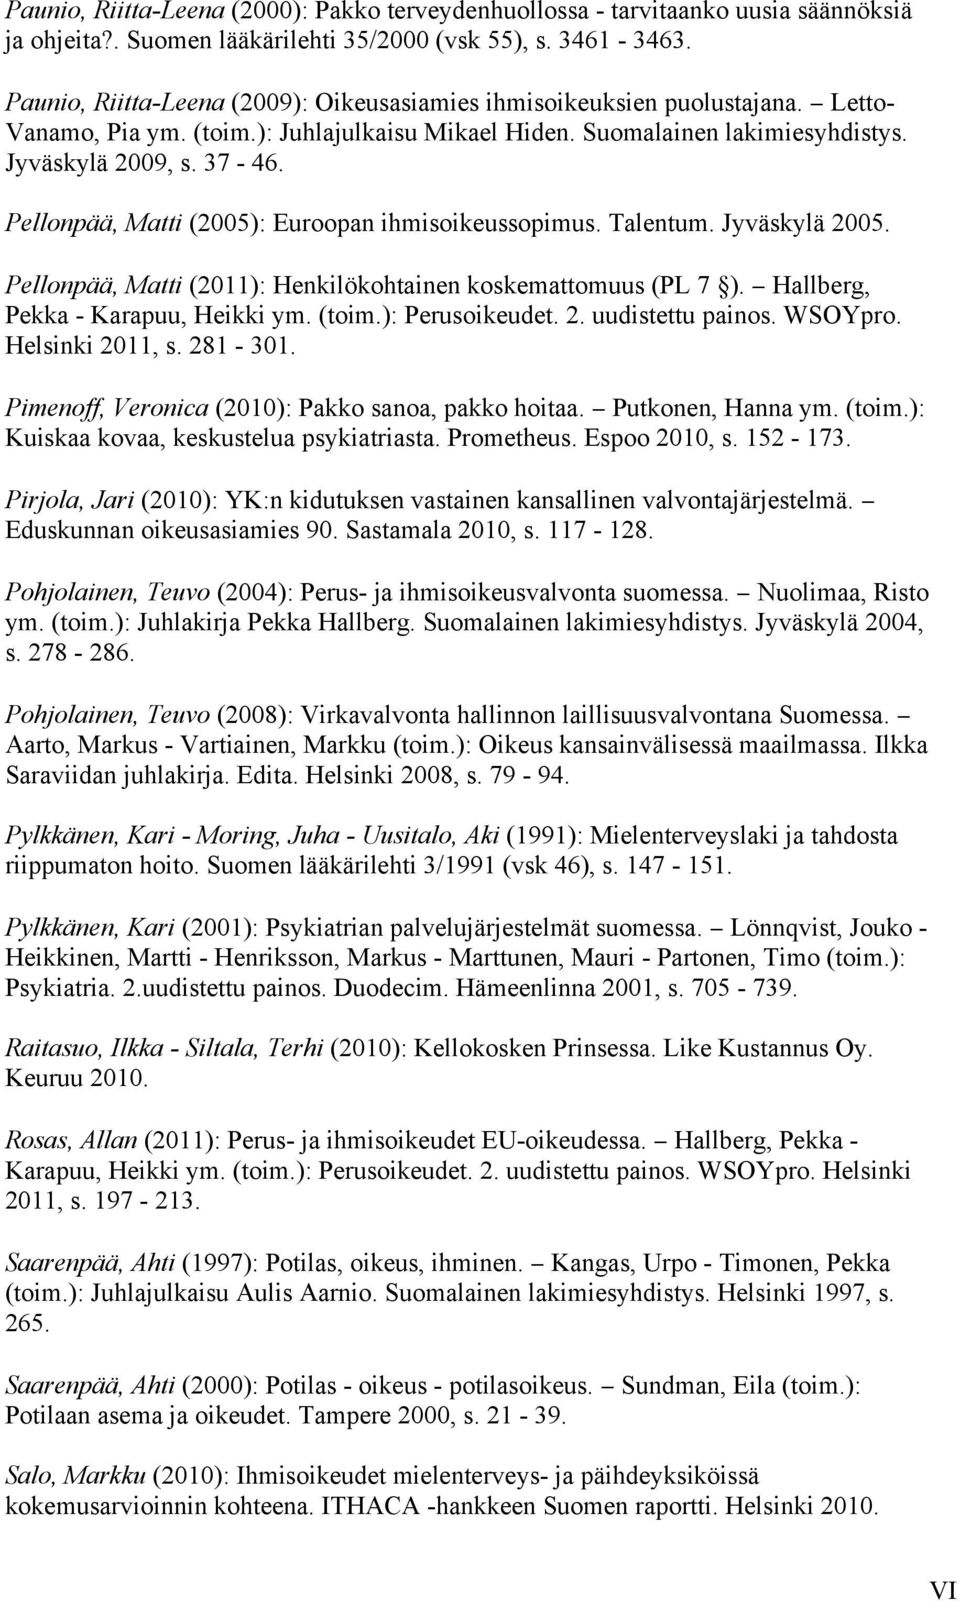 Pellonpää, Matti (2005): Euroopan ihmisoikeussopimus. Talentum. Jyväskylä 2005. Pellonpää, Matti (2011): Henkilökohtainen koskemattomuus (PL 7 ). Hallberg, Pekka - Karapuu, Heikki ym. (toim.